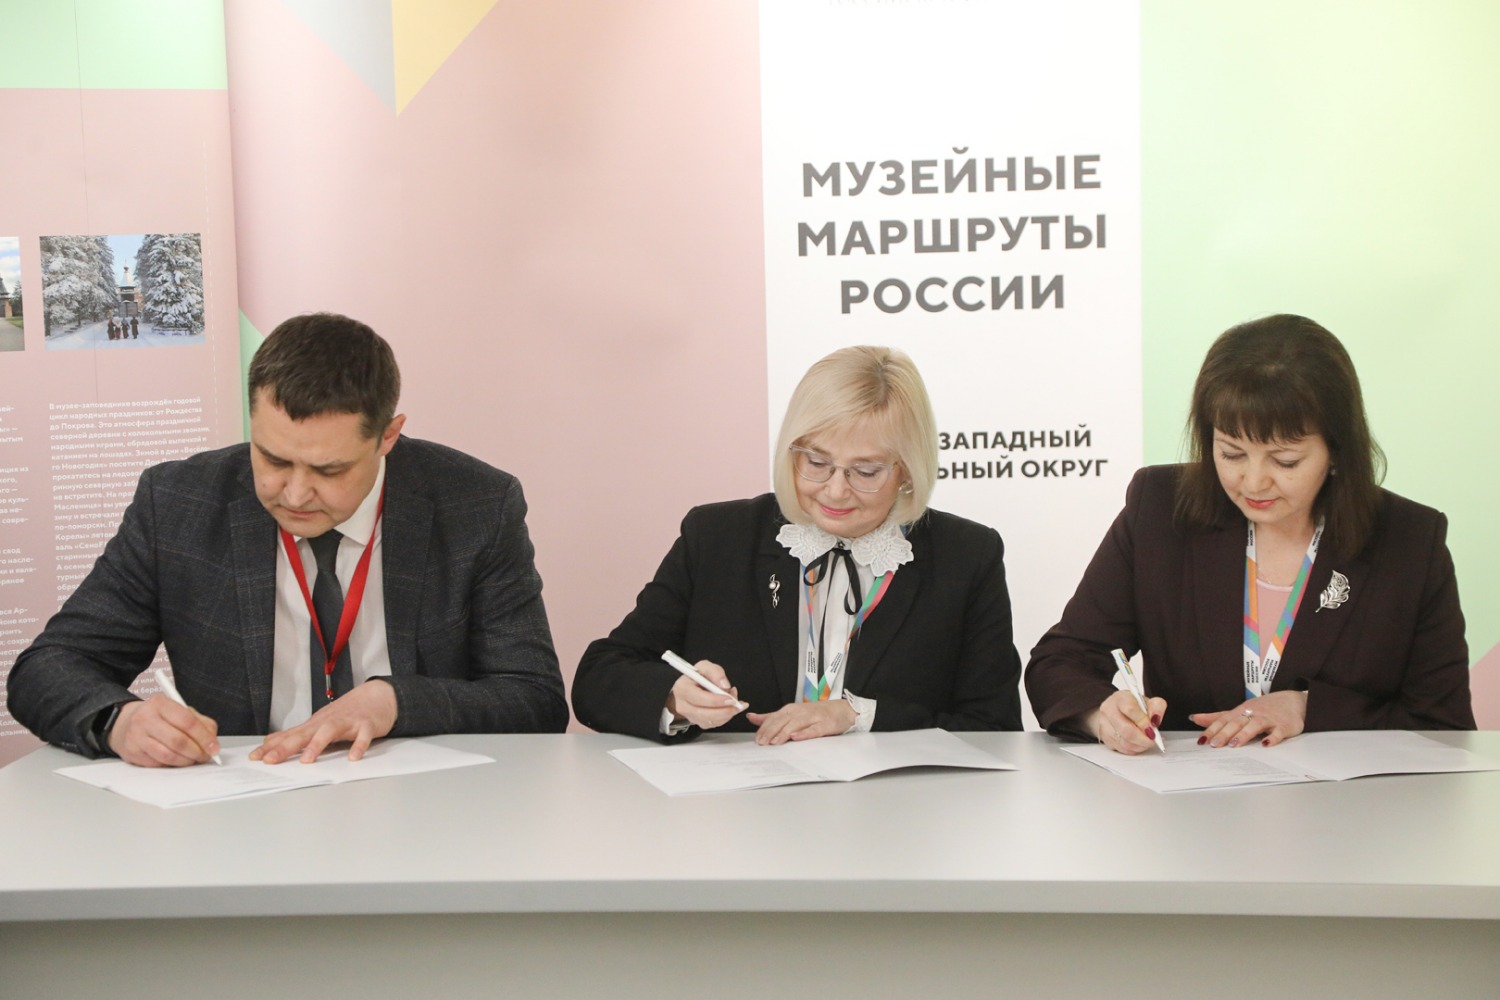 Вологодчина впервые стала принимающей стороной проекта Министерства культуры «Музейные маршруты России».